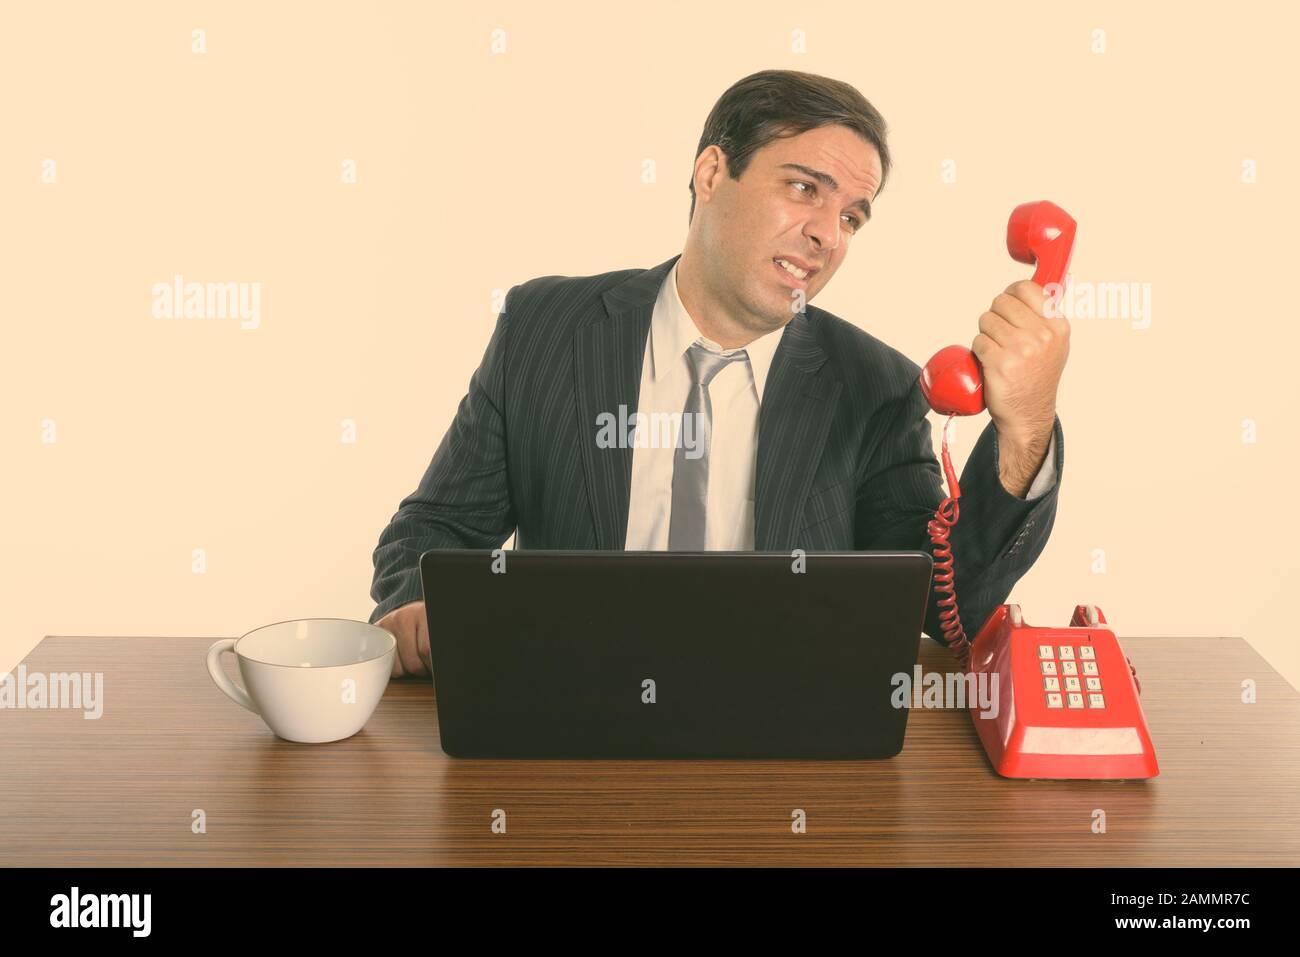 Betonte, dass der persische Geschäftsmann mit einem alten Telefon spricht, während er einen Laptop bei der Arbeit verwendet Stockfoto